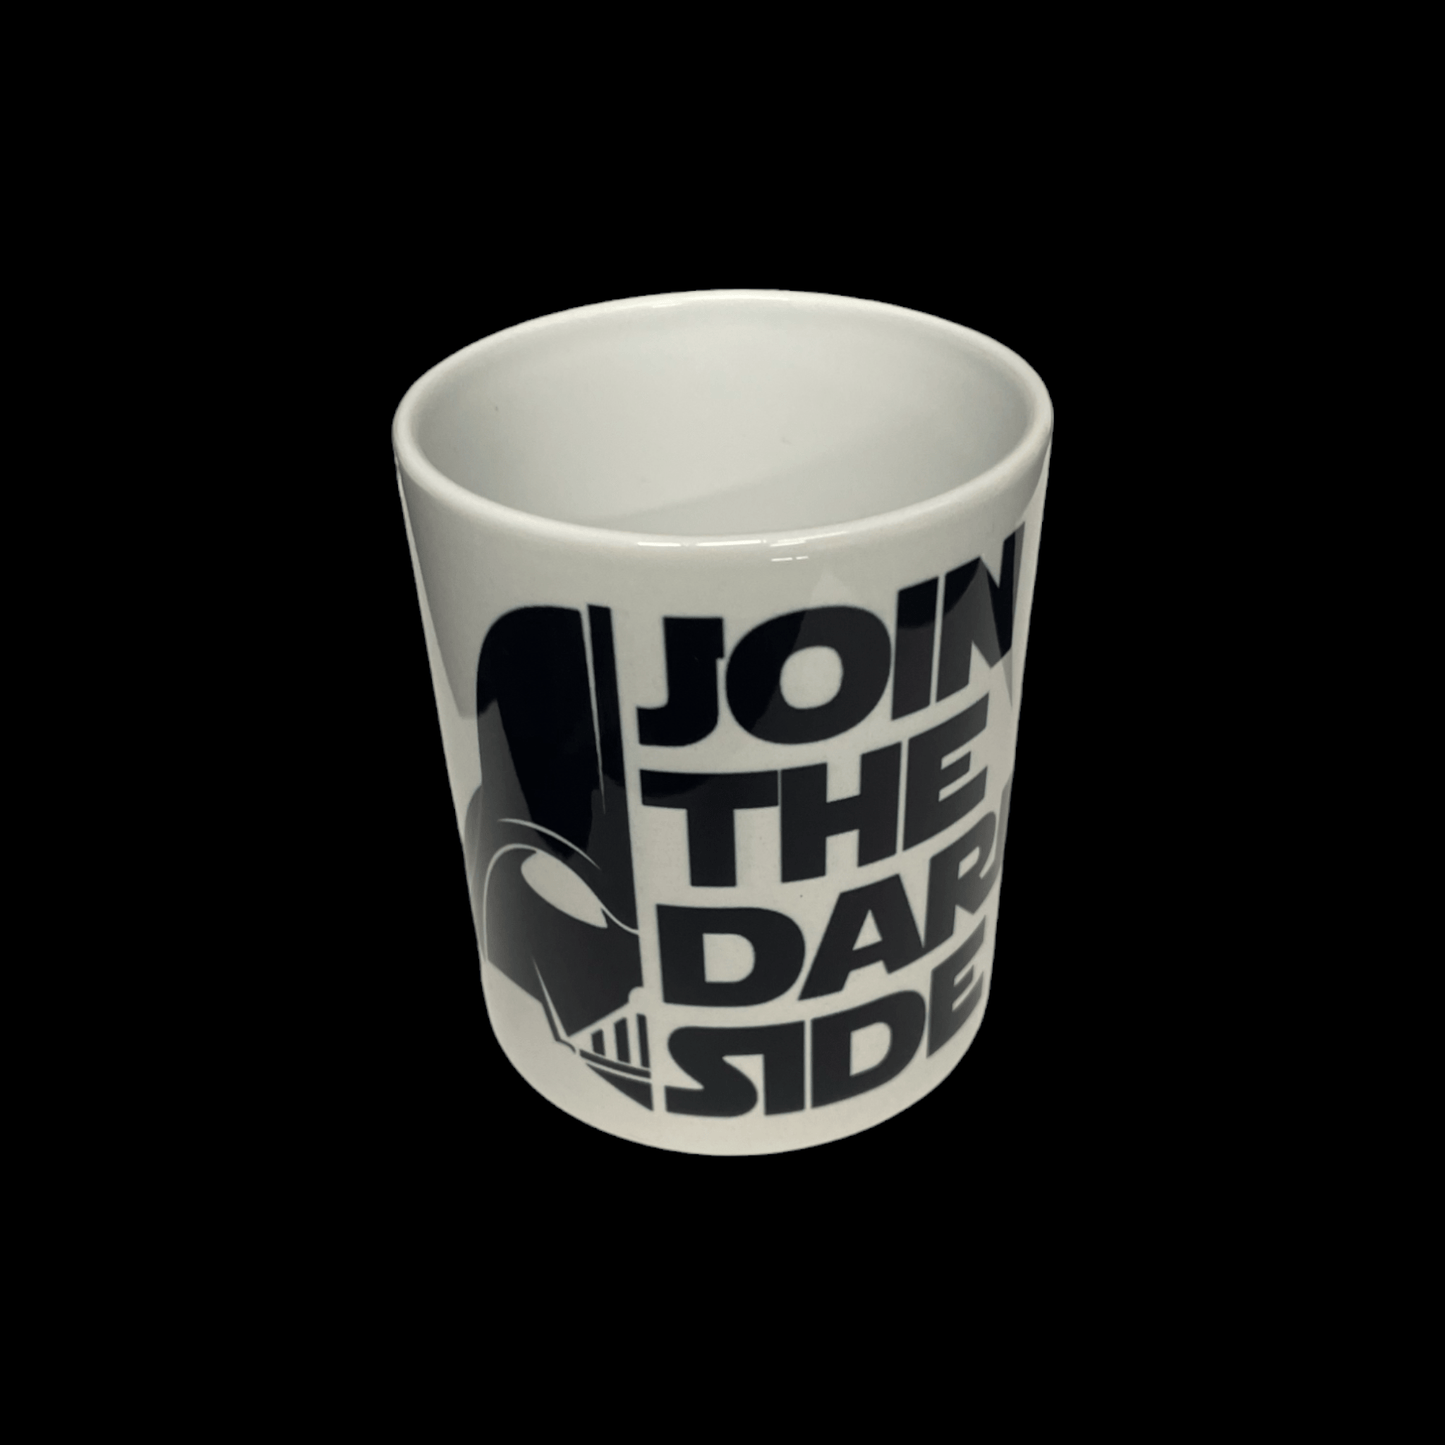 Join The Dark Side Star Wars Mug